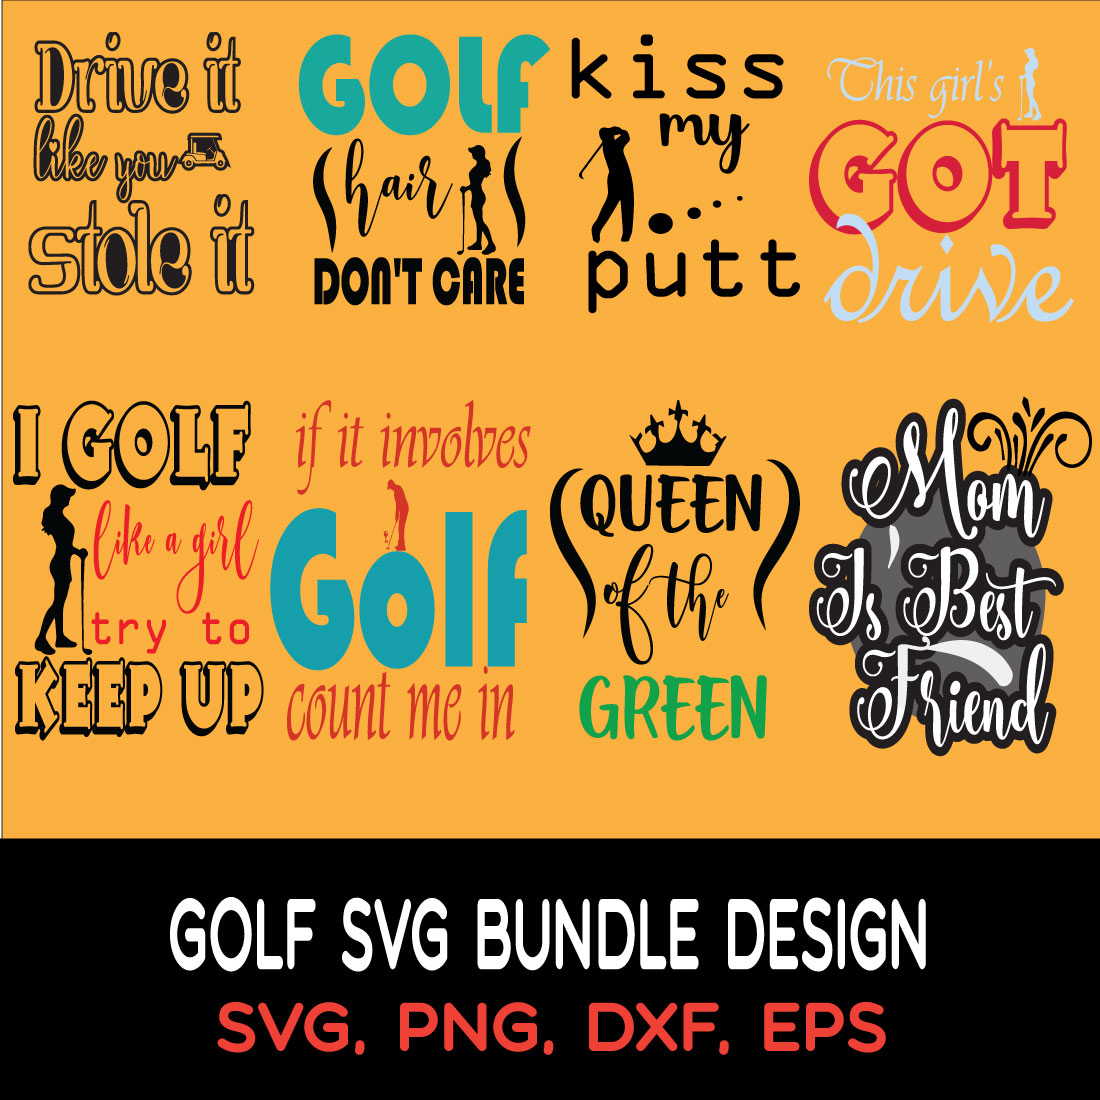 Typography SVG Bundle Design cover image.